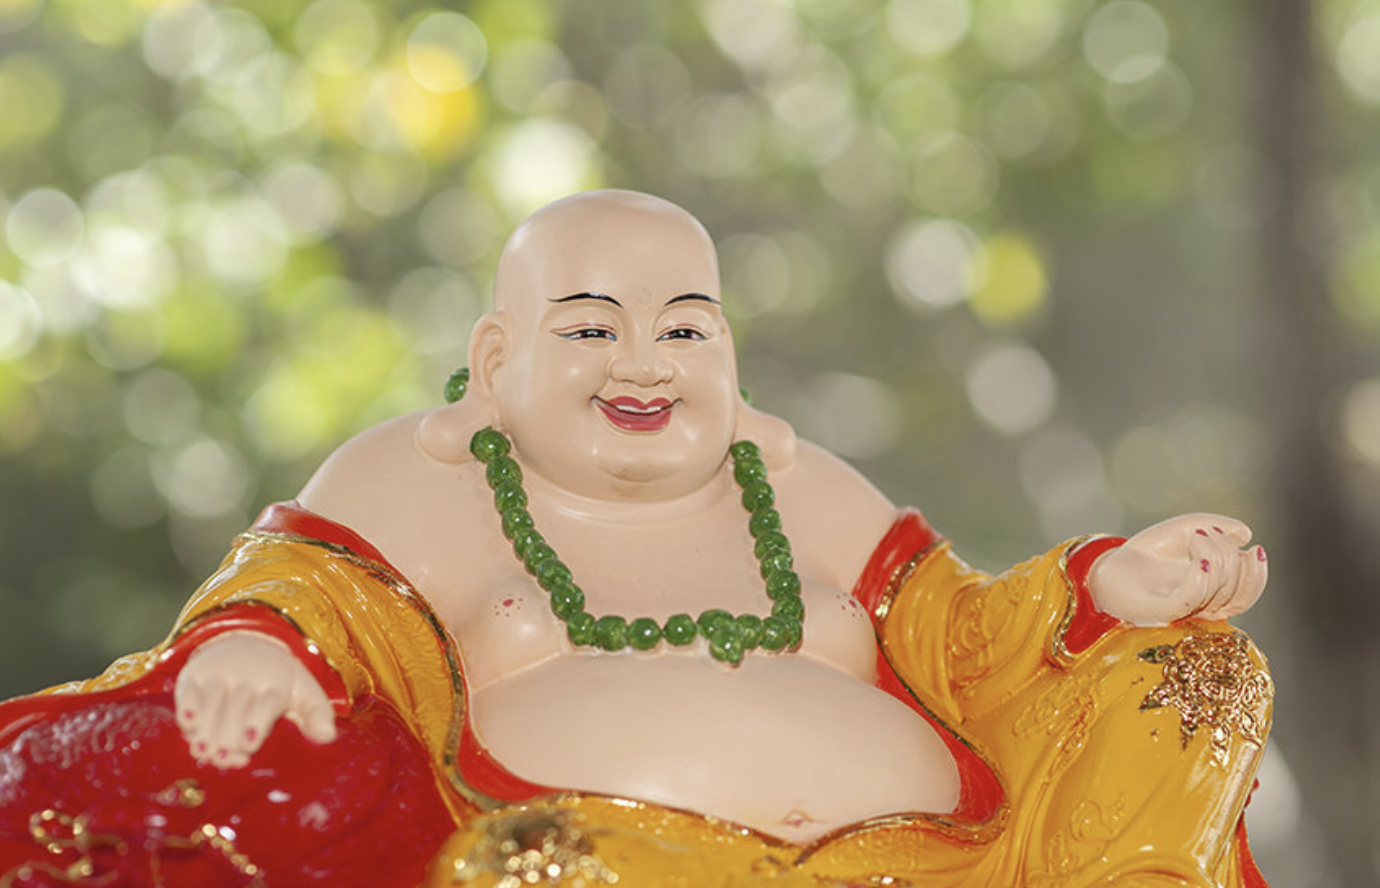 Hình nền Phật Di Lặc mừng xuân - Hình Phật Di Lặc đẹp mừng xuân Tân Sửu